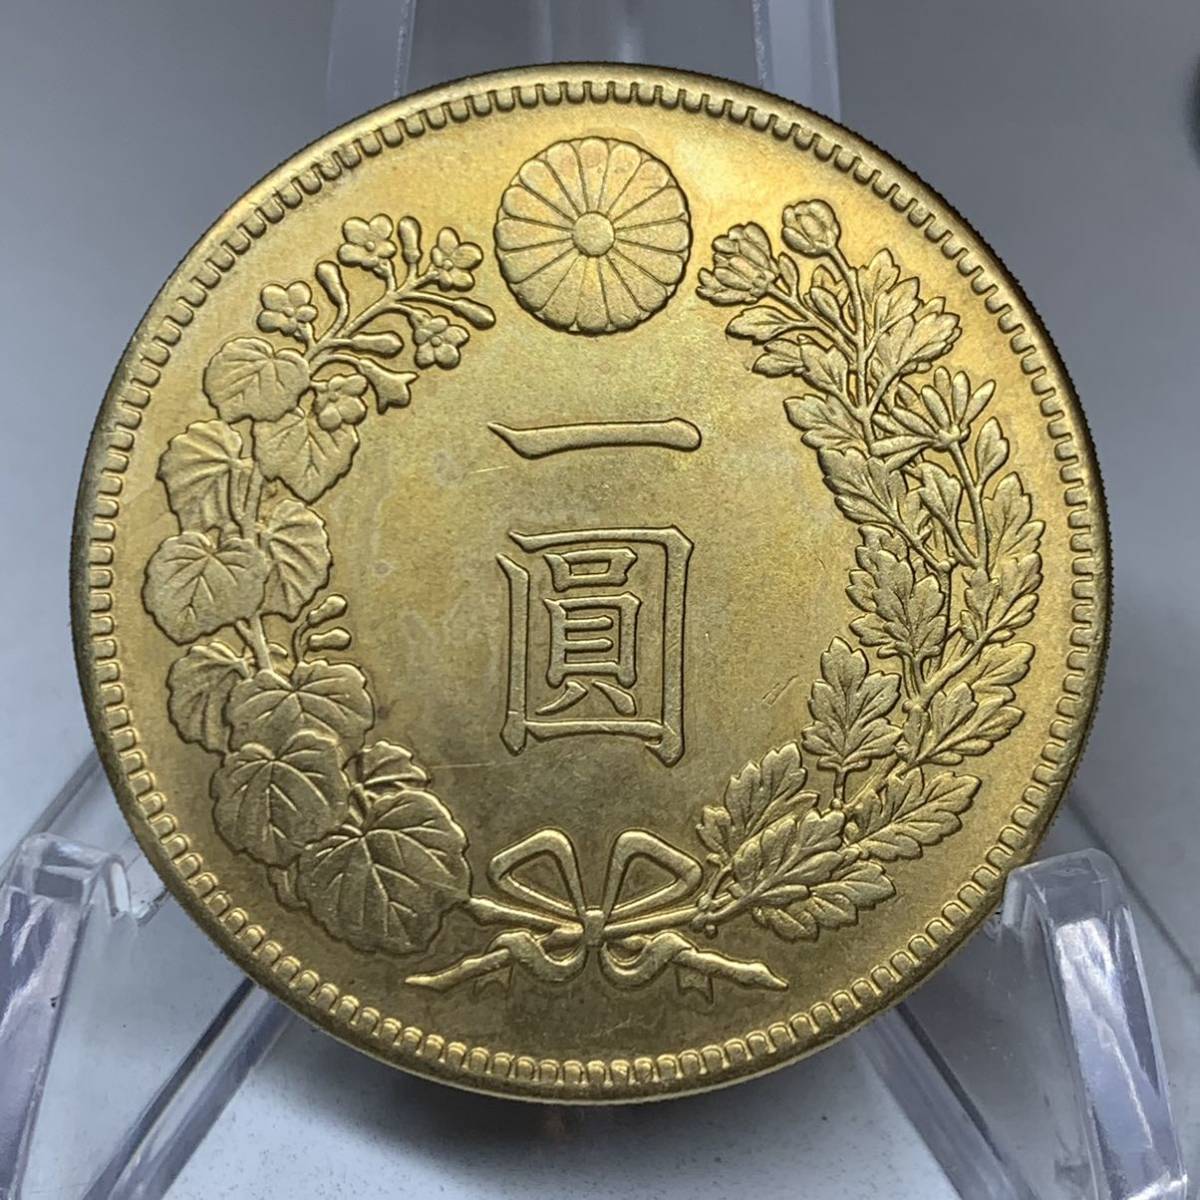 WX870日本記念メダル一圓明治21年菊紋日本硬貨貿易銀日本古銭 